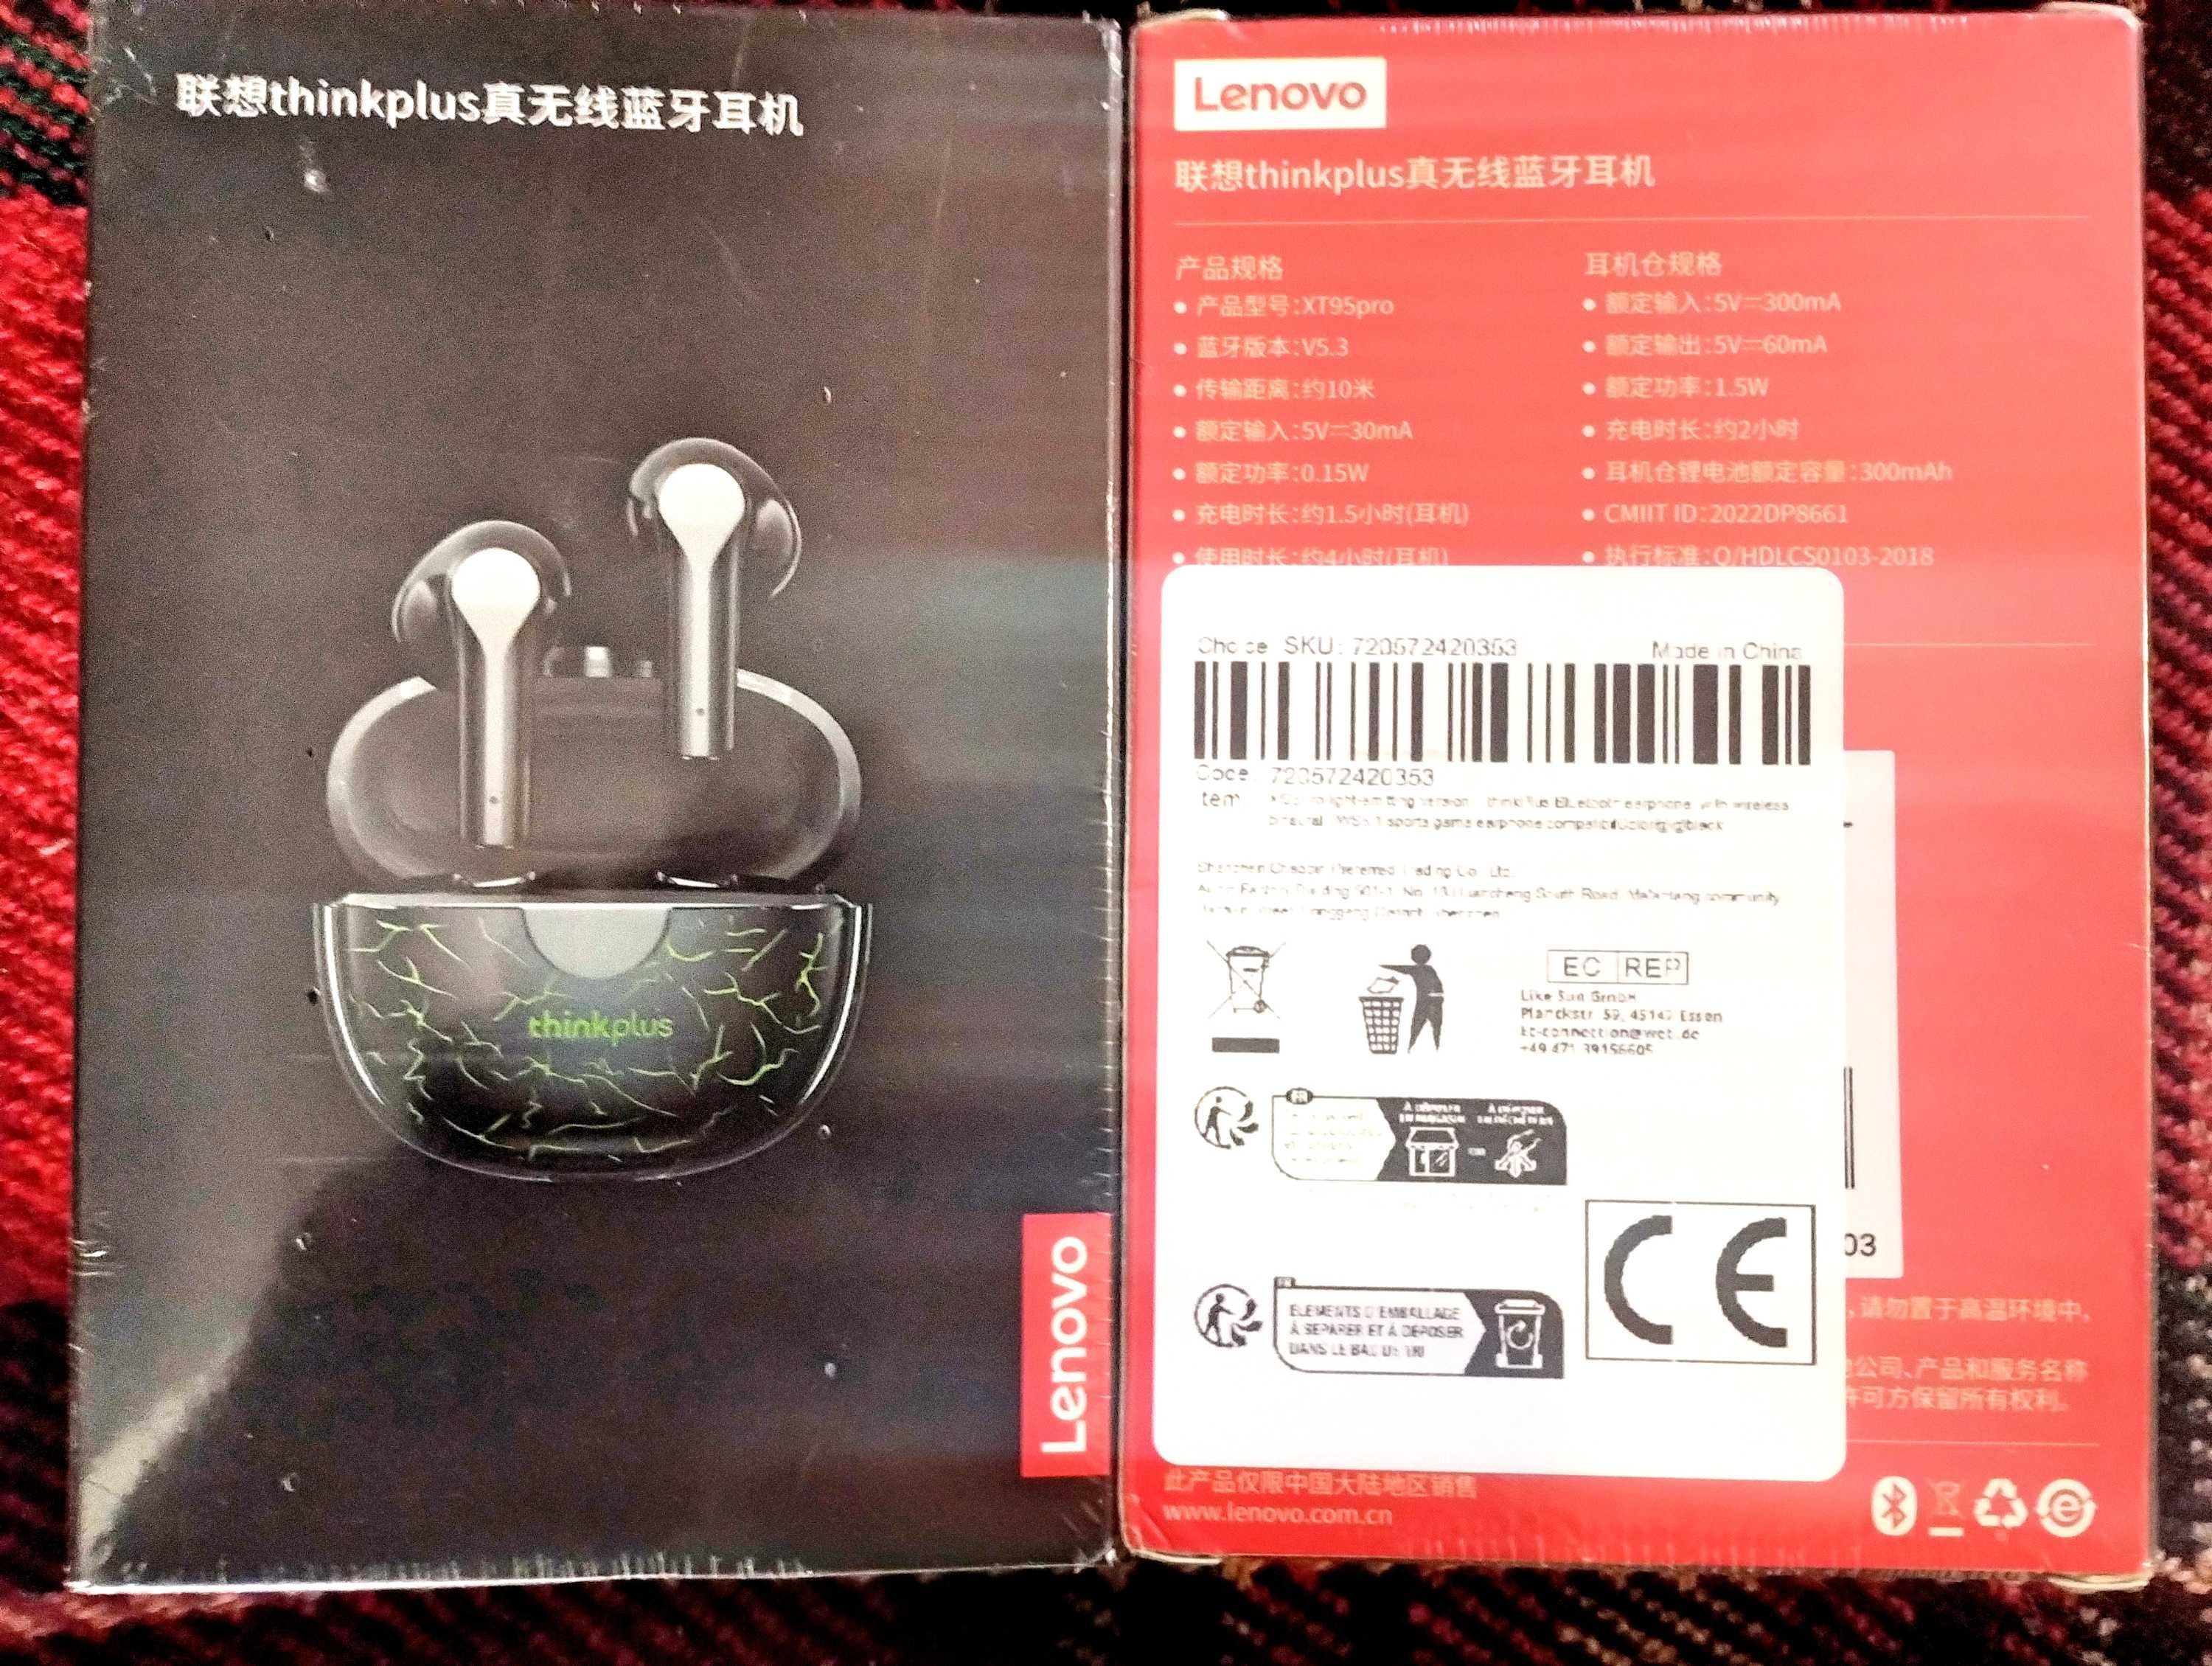 Классные беспроводные наушники Lenovo Xt95Pro ThinkPlus супер бренда!